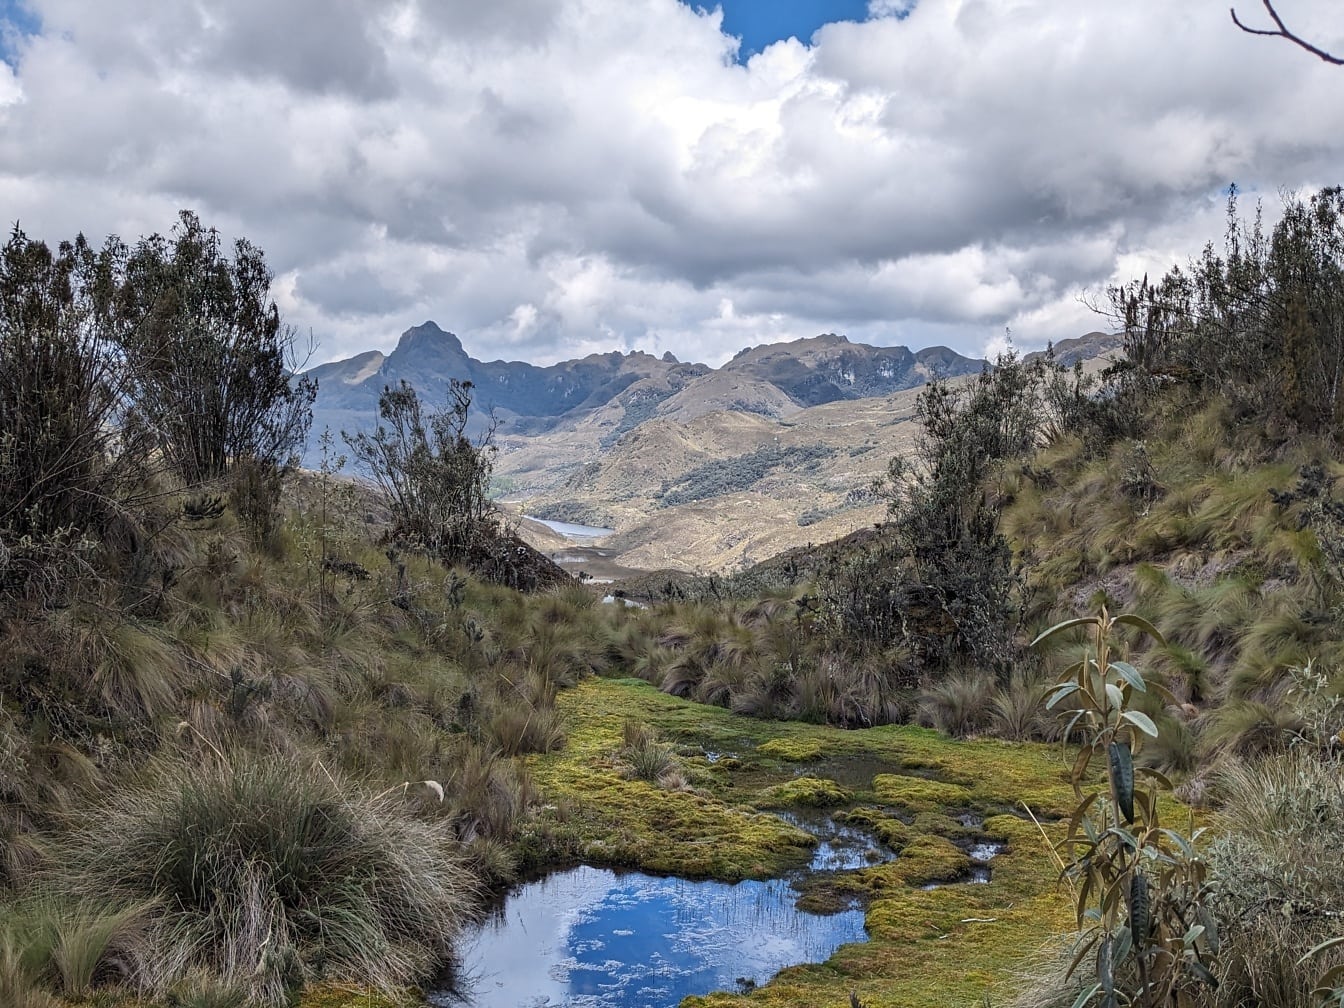 Μικρό ρυάκι σε μια κοιλάδα με βουνά στο βάθος στο φυσικό πάρκο Cajes στο Εκουαδόρ